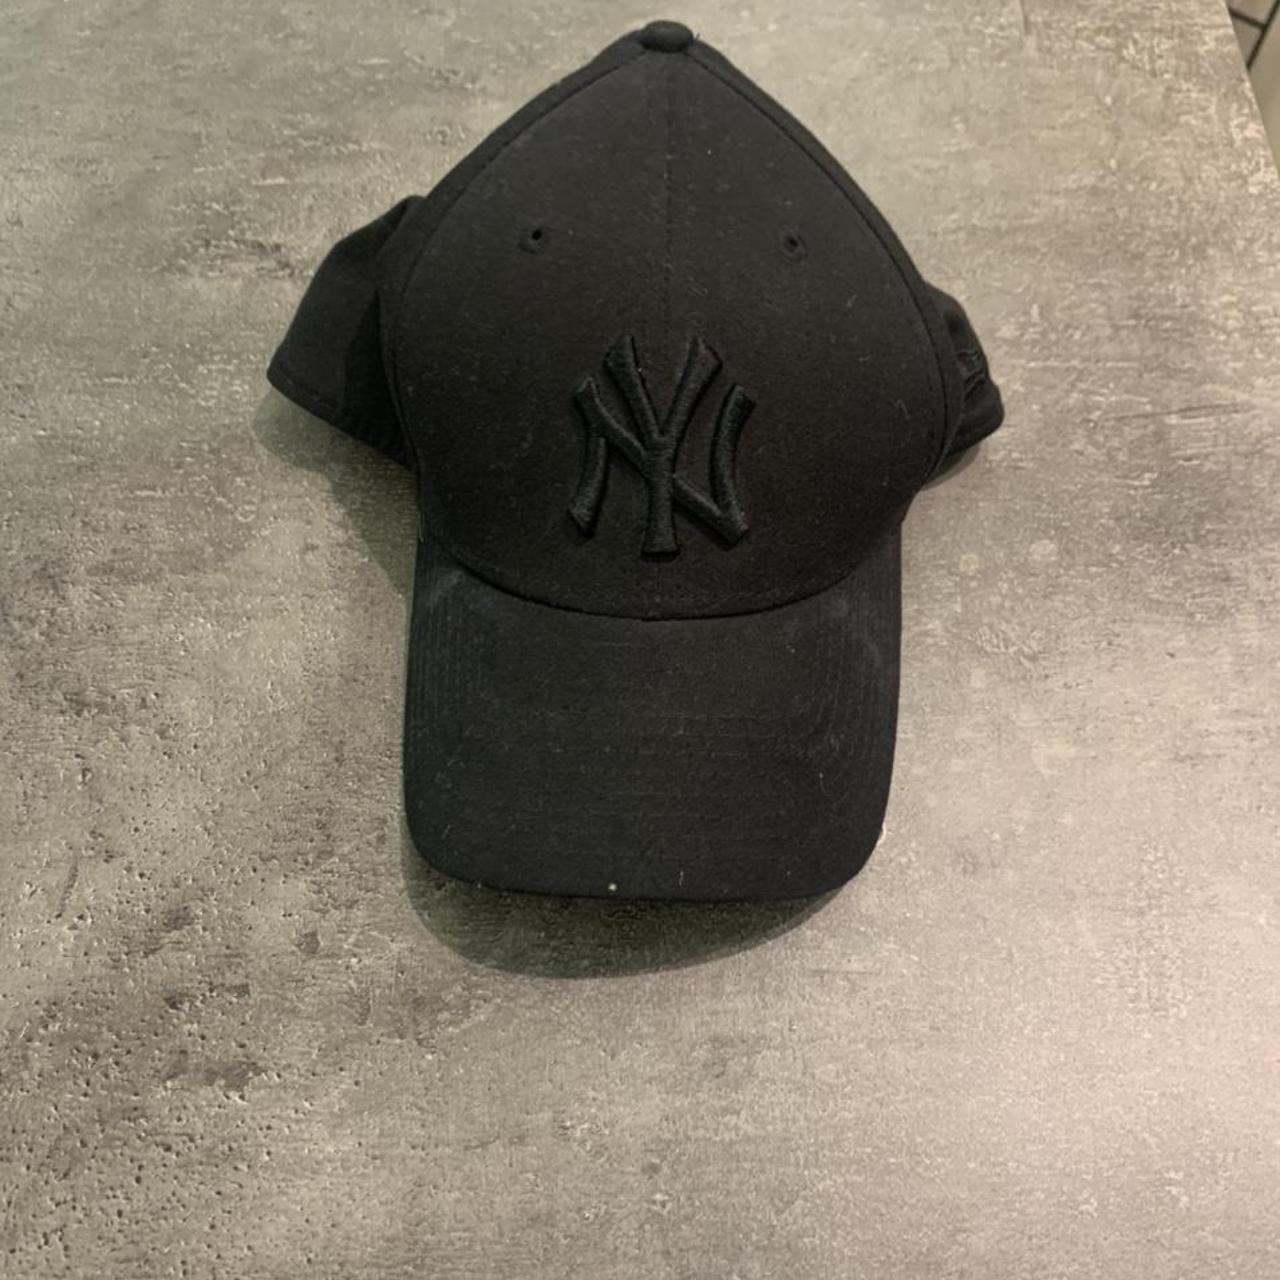 New York Yankees cap, New Era (black) #yankees... - Depop